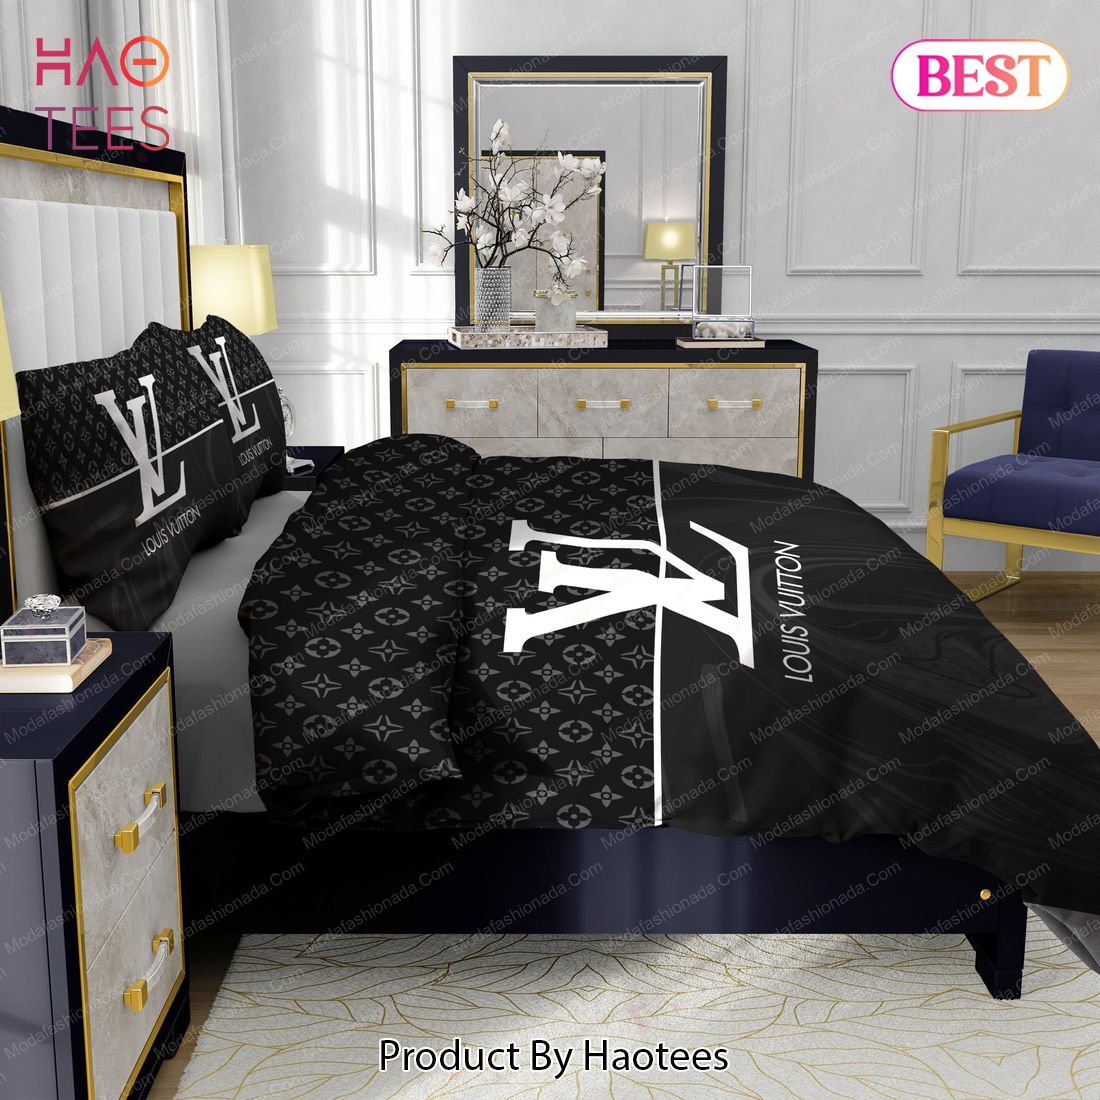 Buy Black And White Veinstone Louis Vuitton Bedding Sets Bed Sets, Bedroom  Sets, Comforter Sets, Duvet